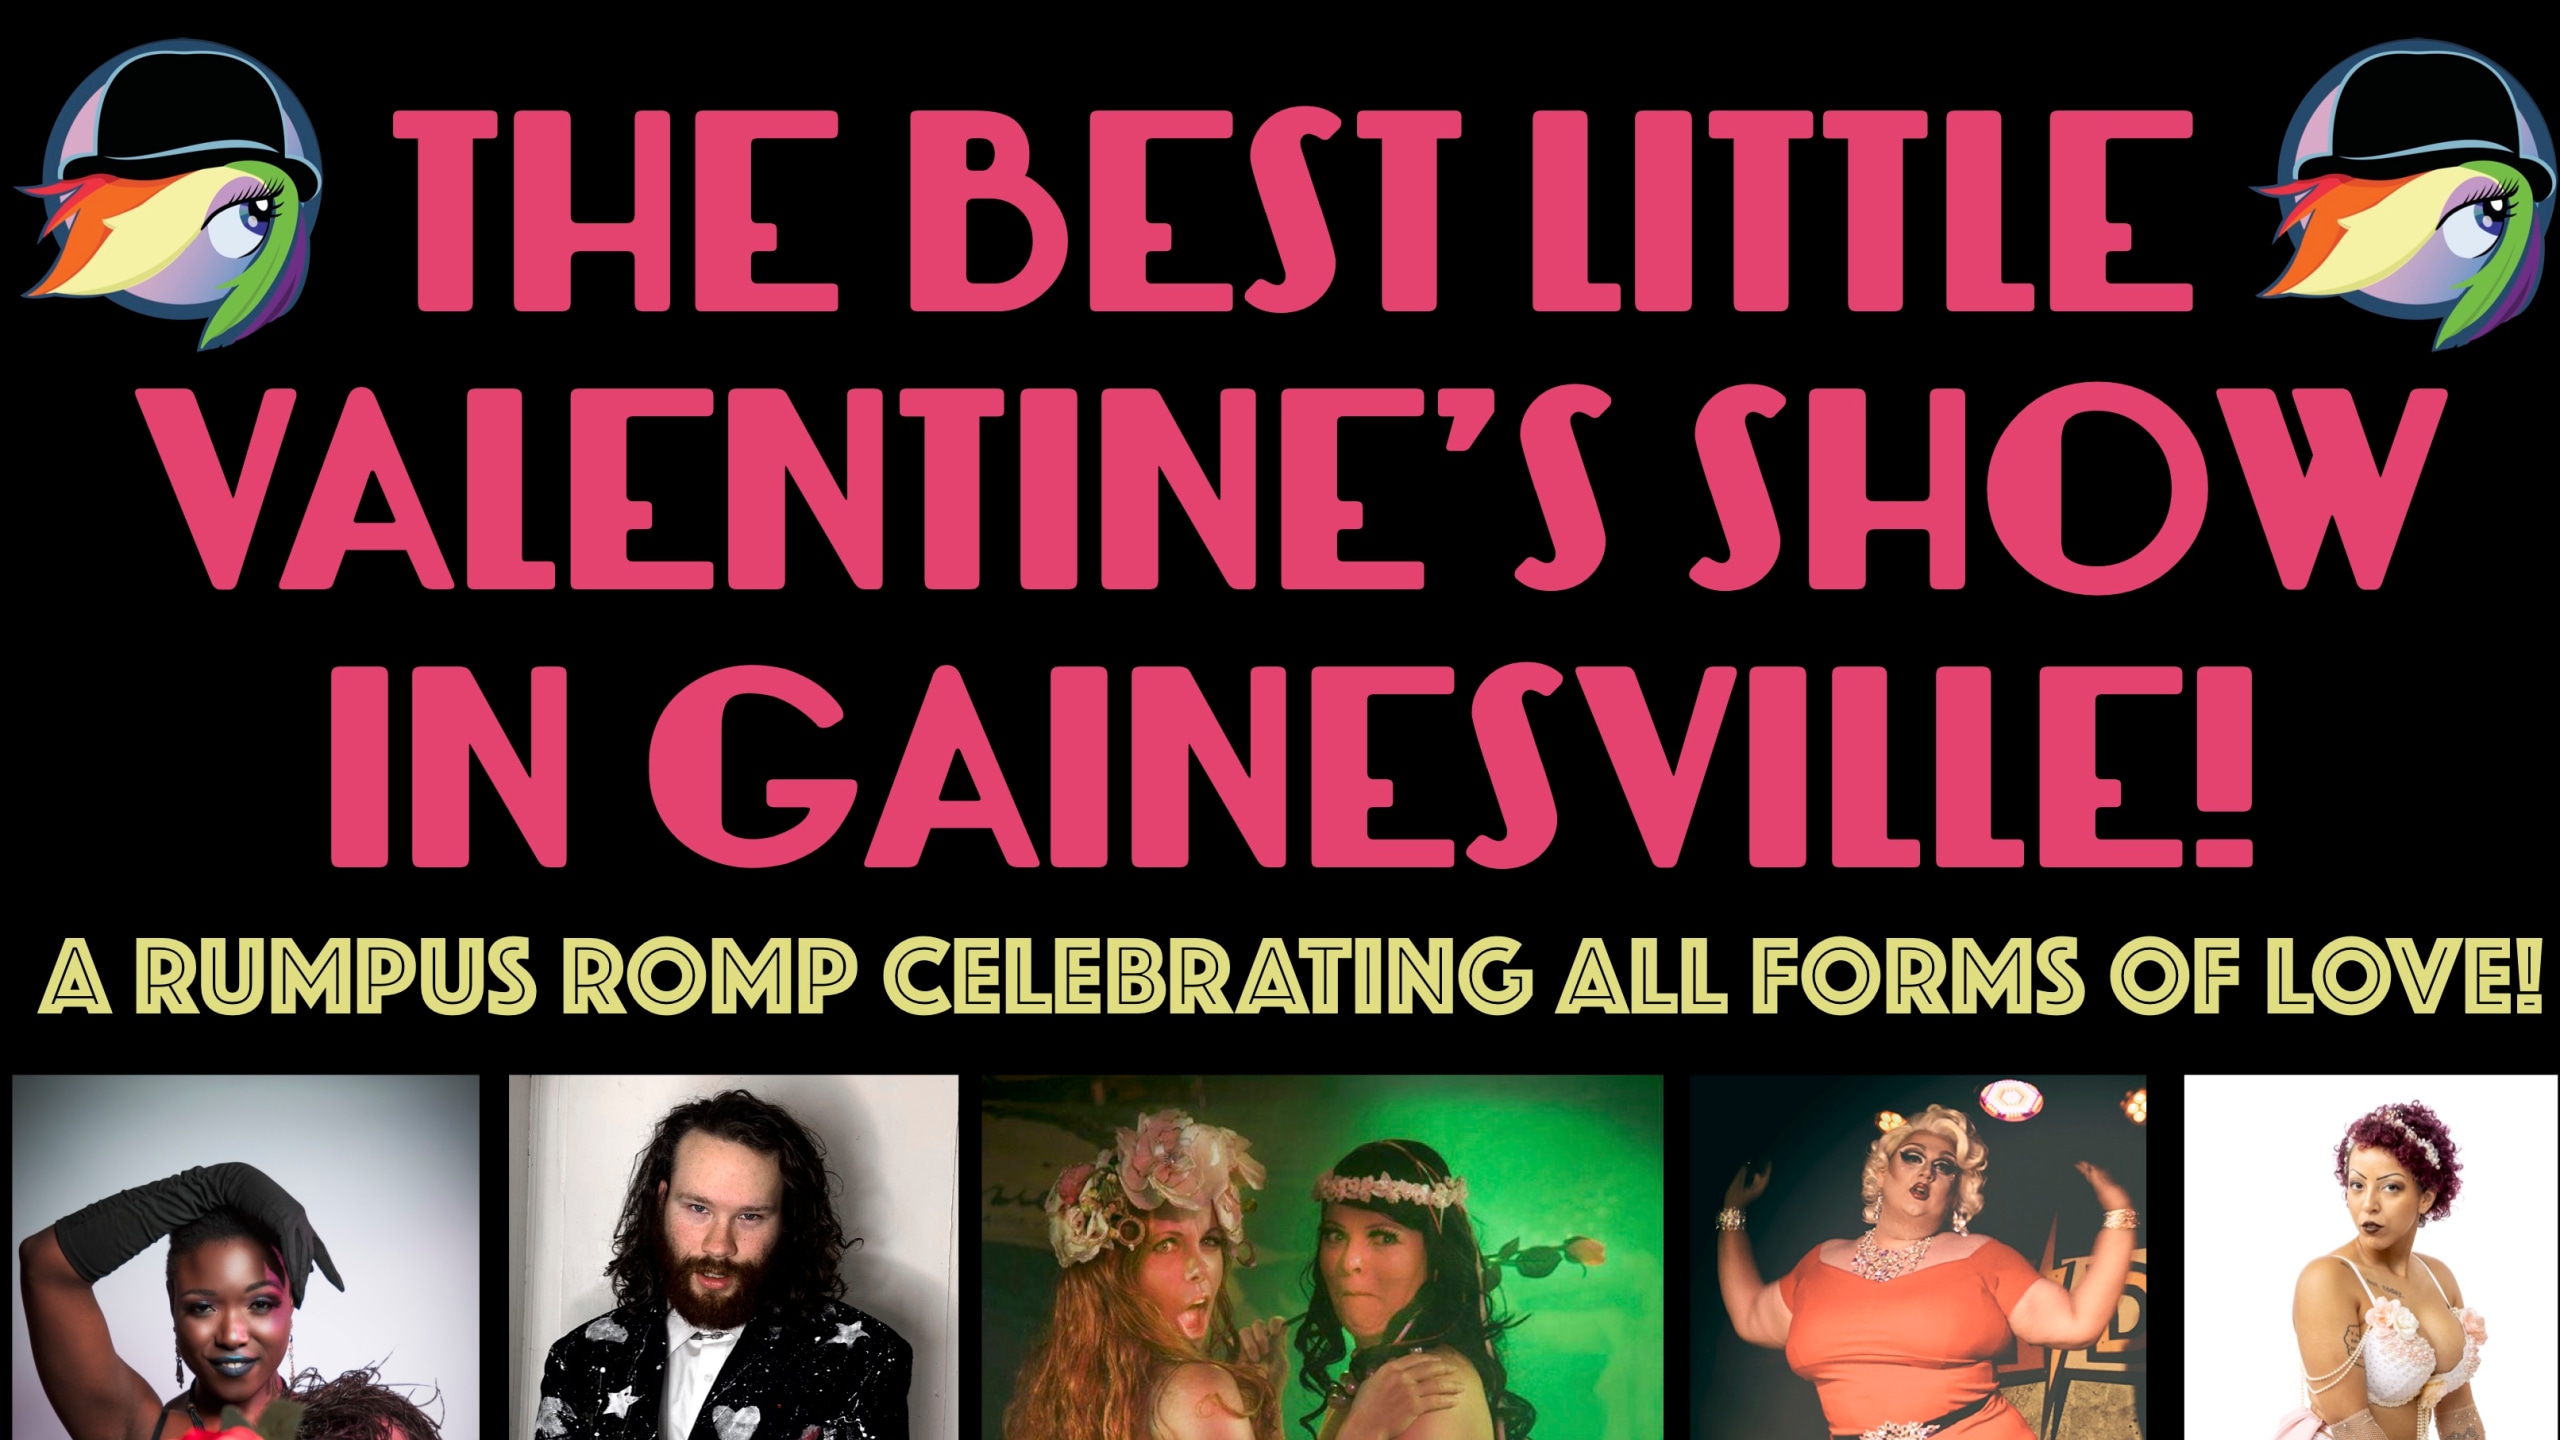 The Best Little Valentine’s Show in Gainesville!